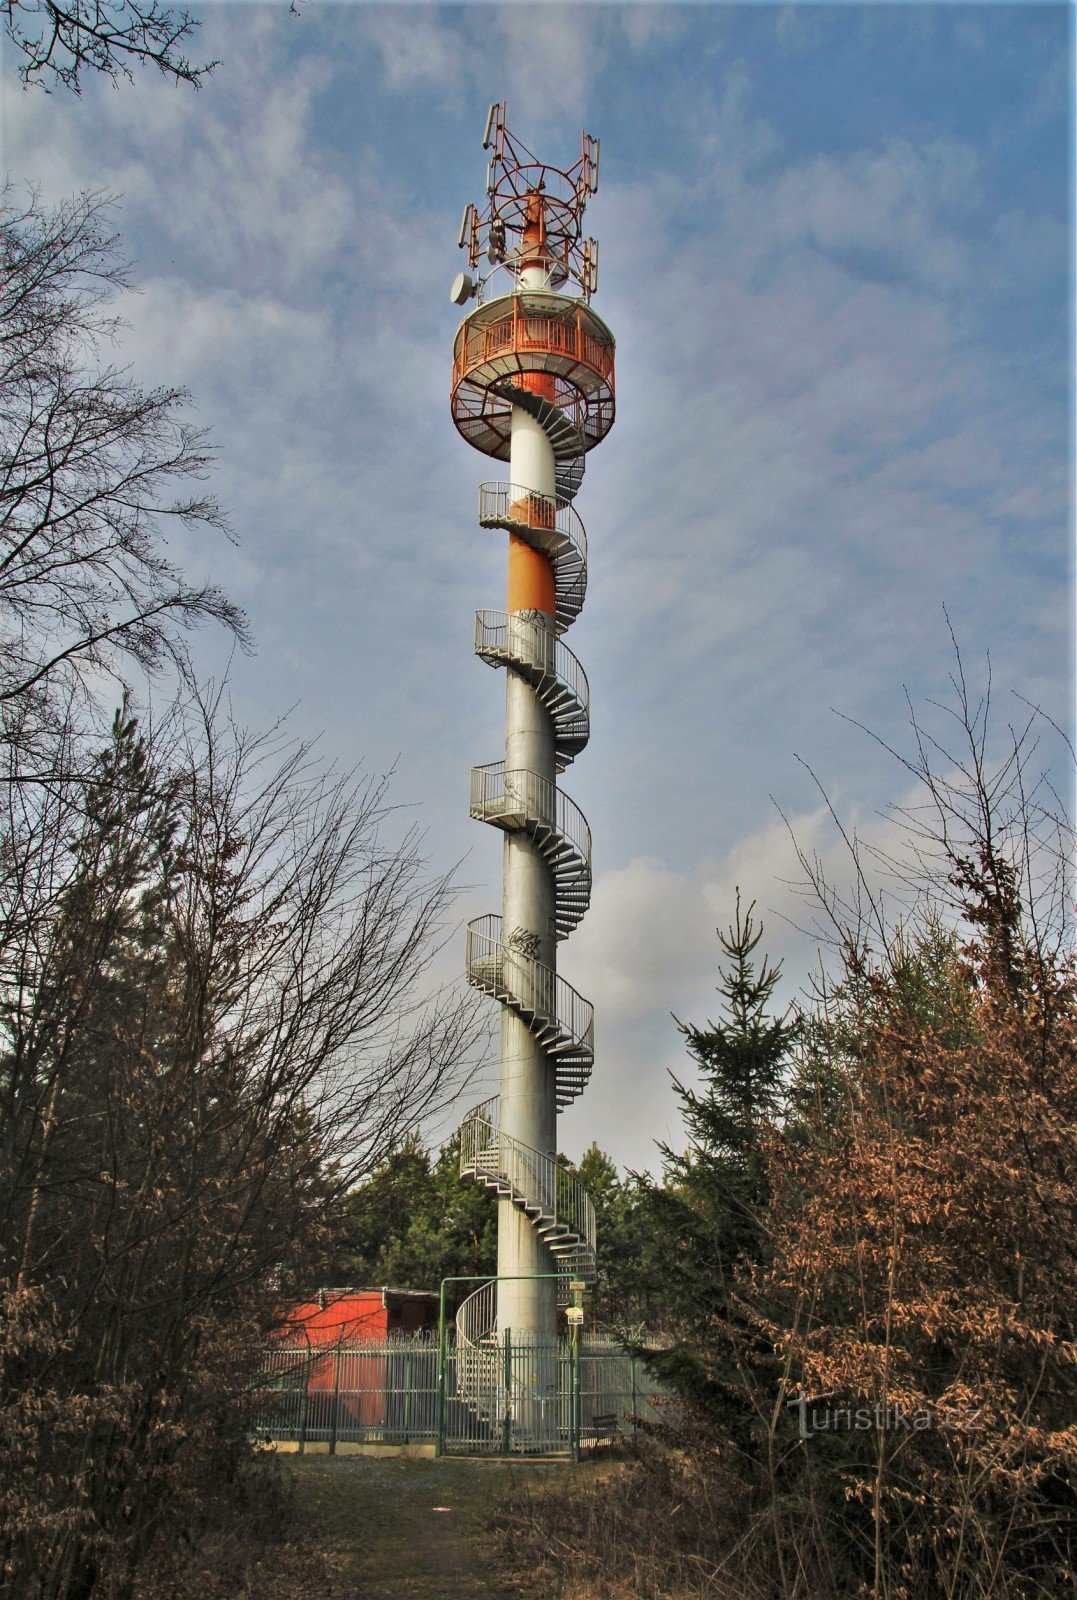 Čebínka lookout tower